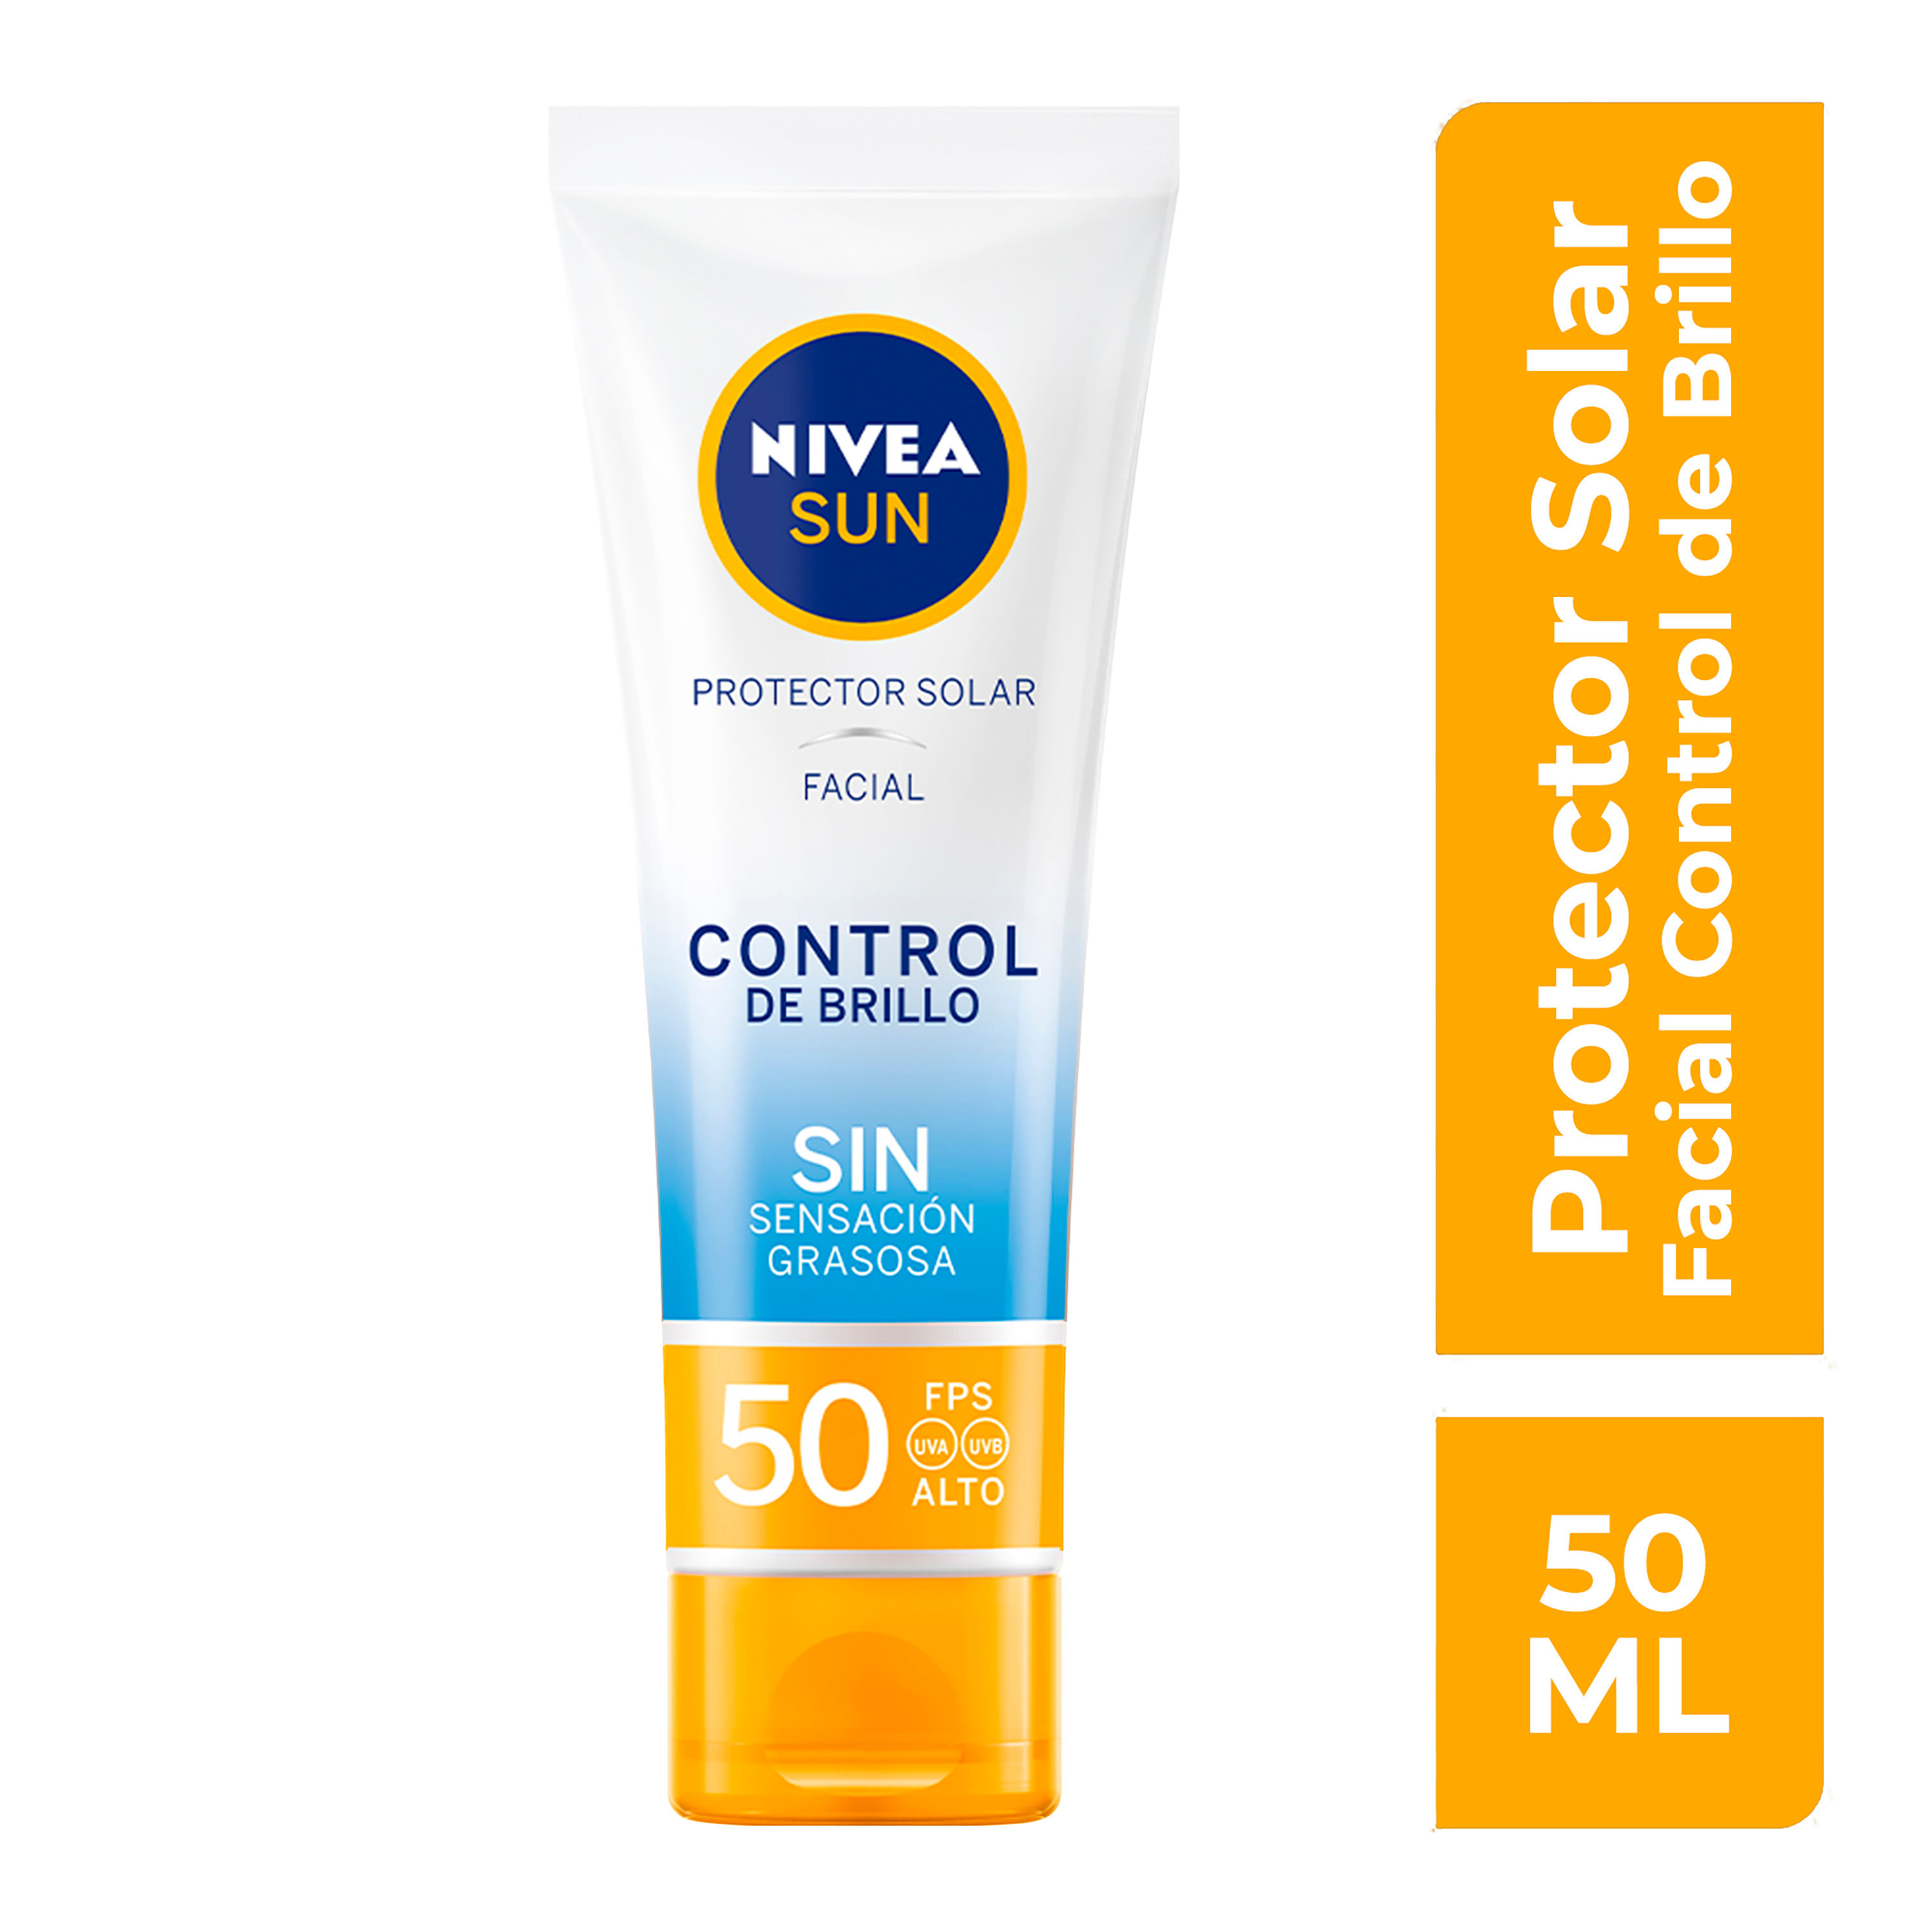 Comprar Protector Solar Facial Nivea Piel Sensible, FPS 50+ - 50ml, Walmart Guatemala - Maxi Despensa